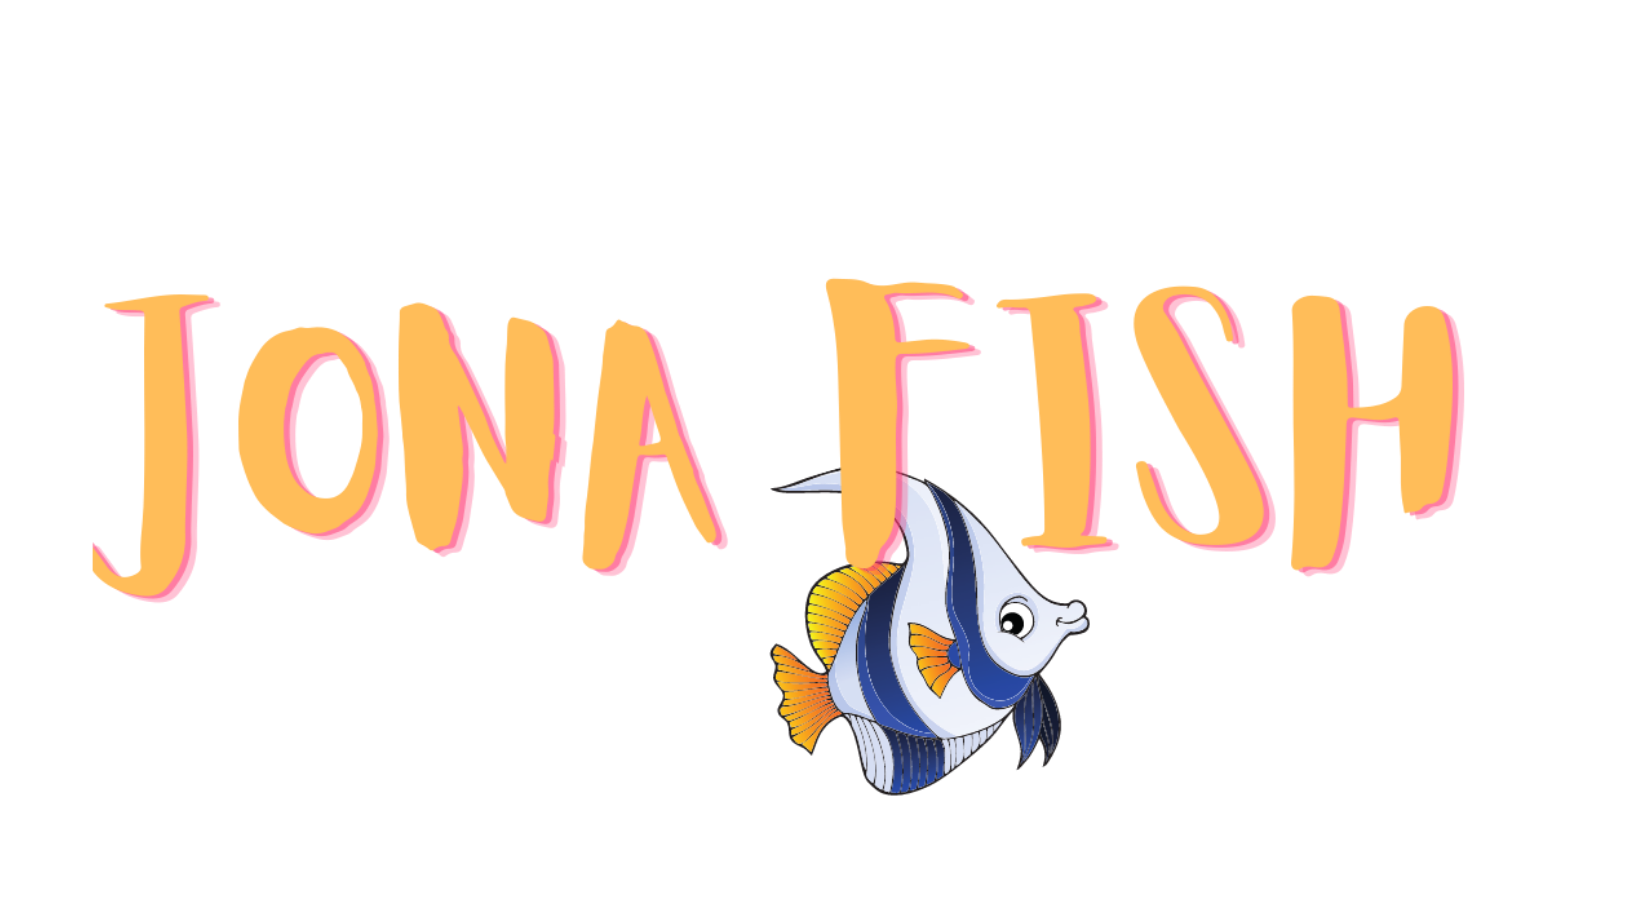  JonaFish 